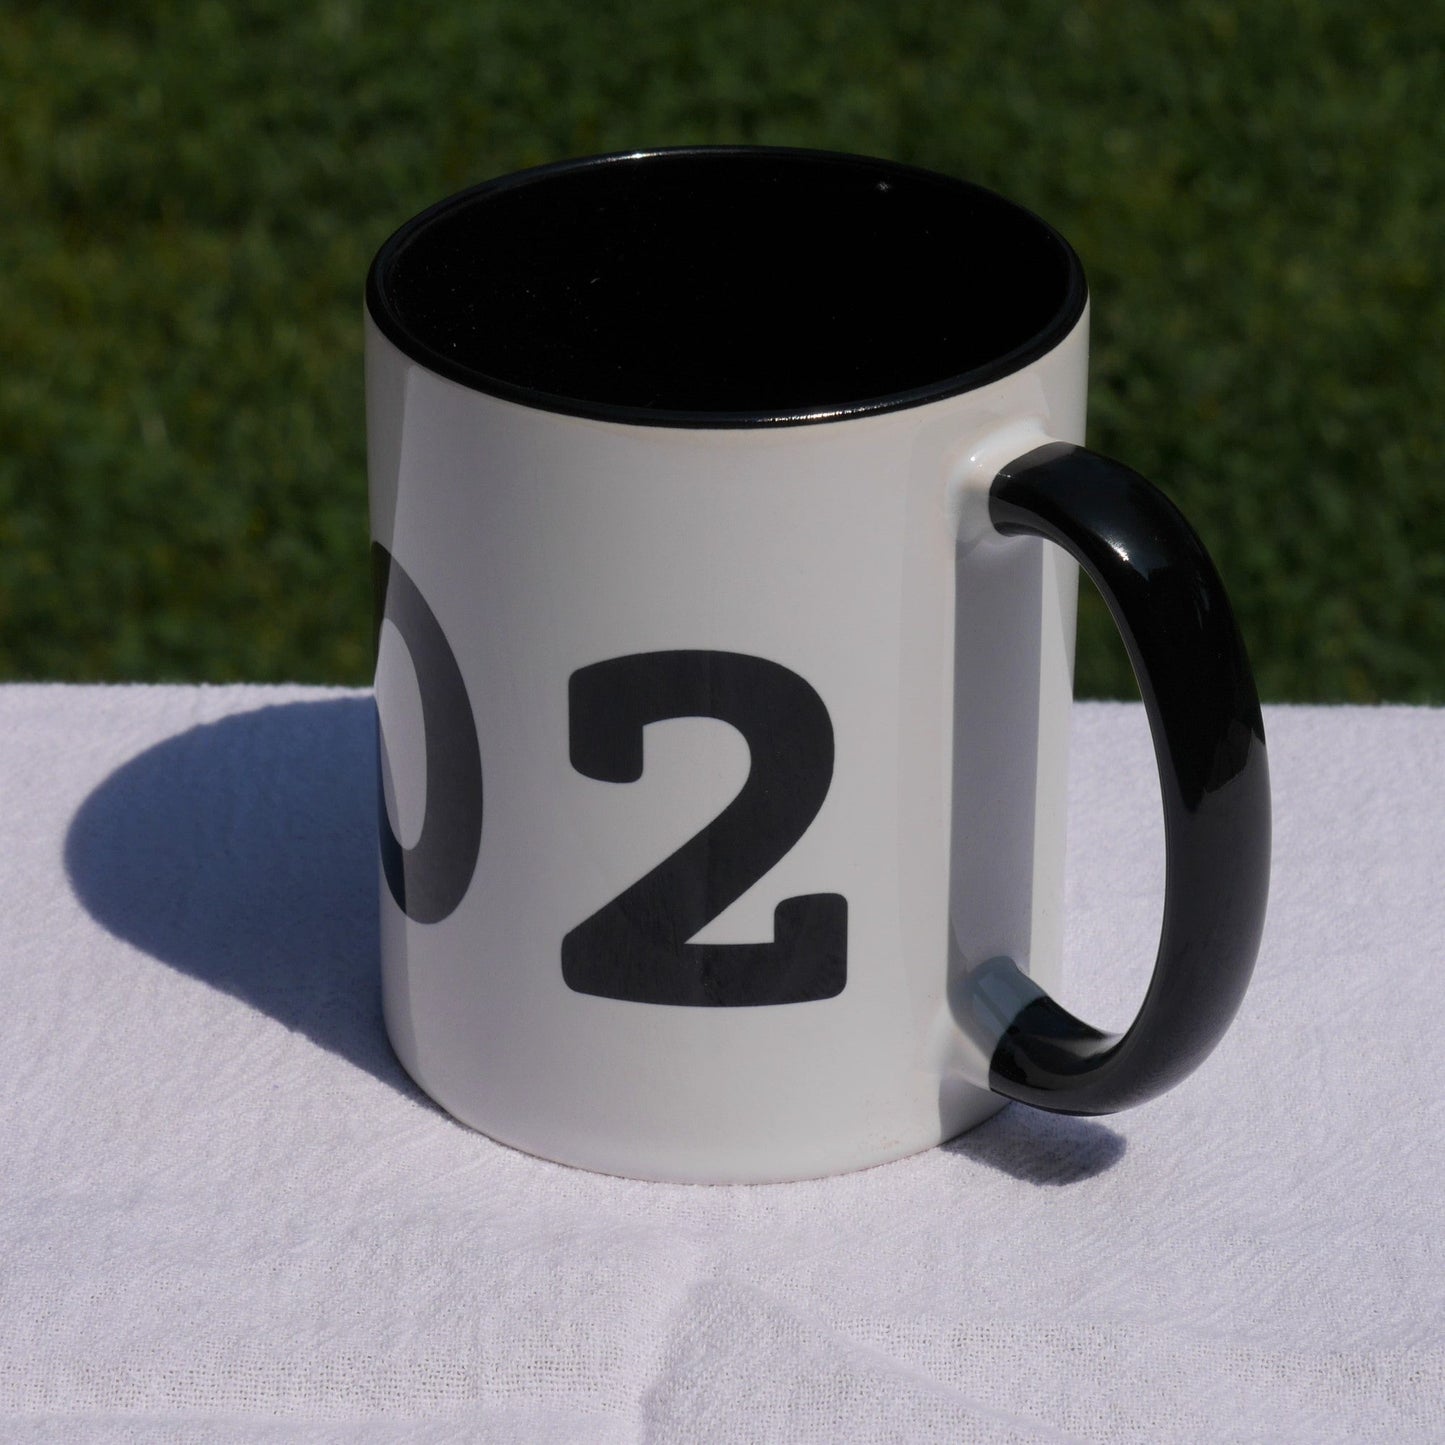 Aviation-Theme Coffee Mug - Black • SJC San Jose • YHM Designs - Image 06